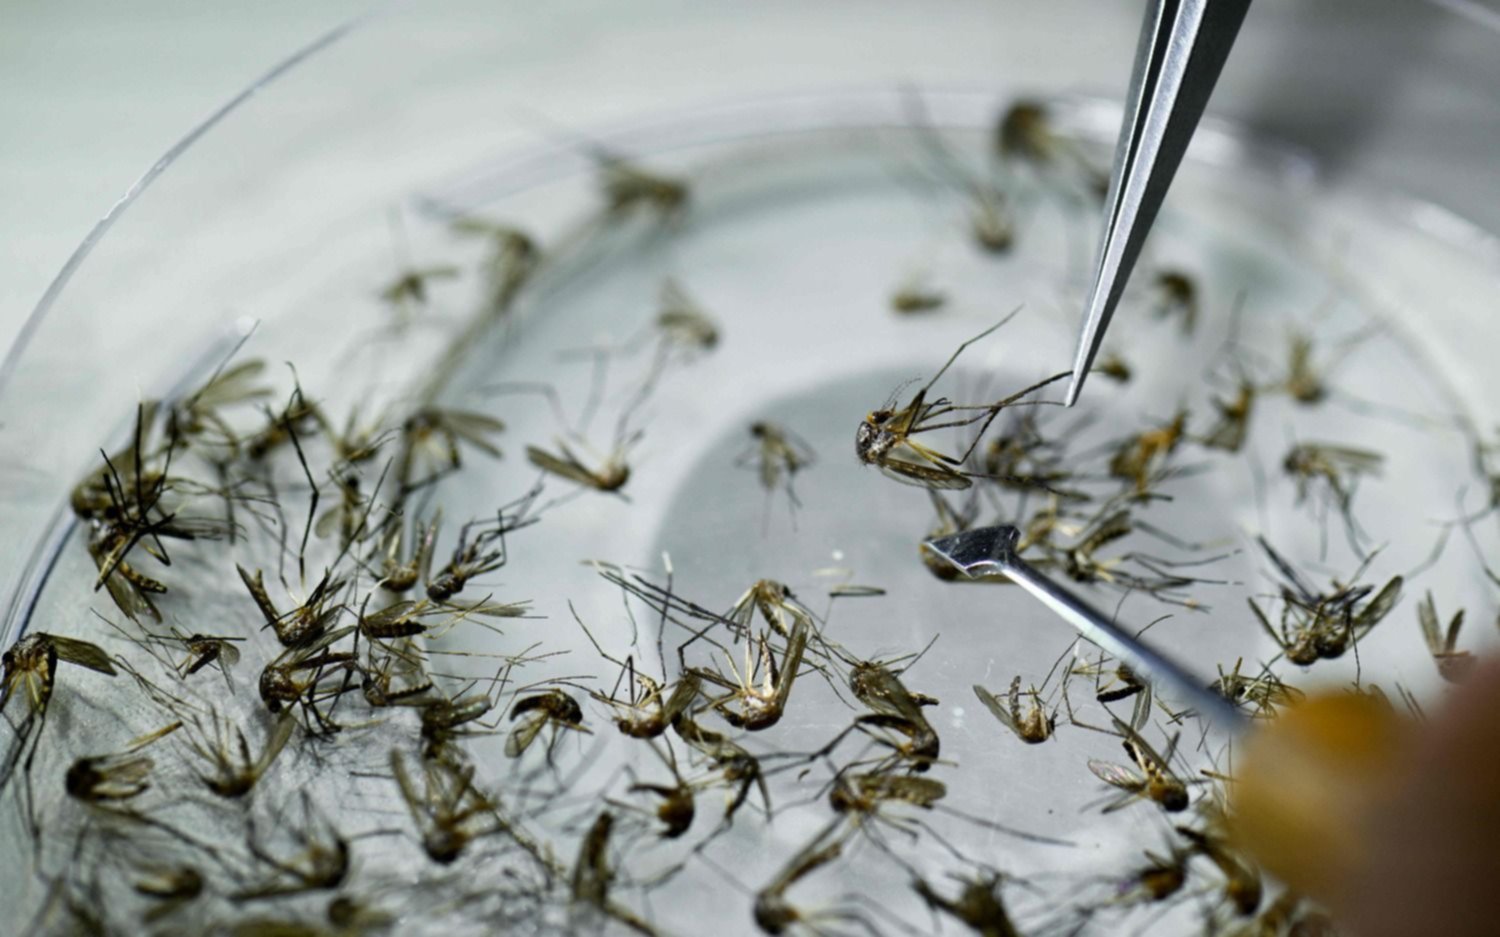 Alerta dengue: el mosquito sobrevive bajo el agua, según estudio del Conicet